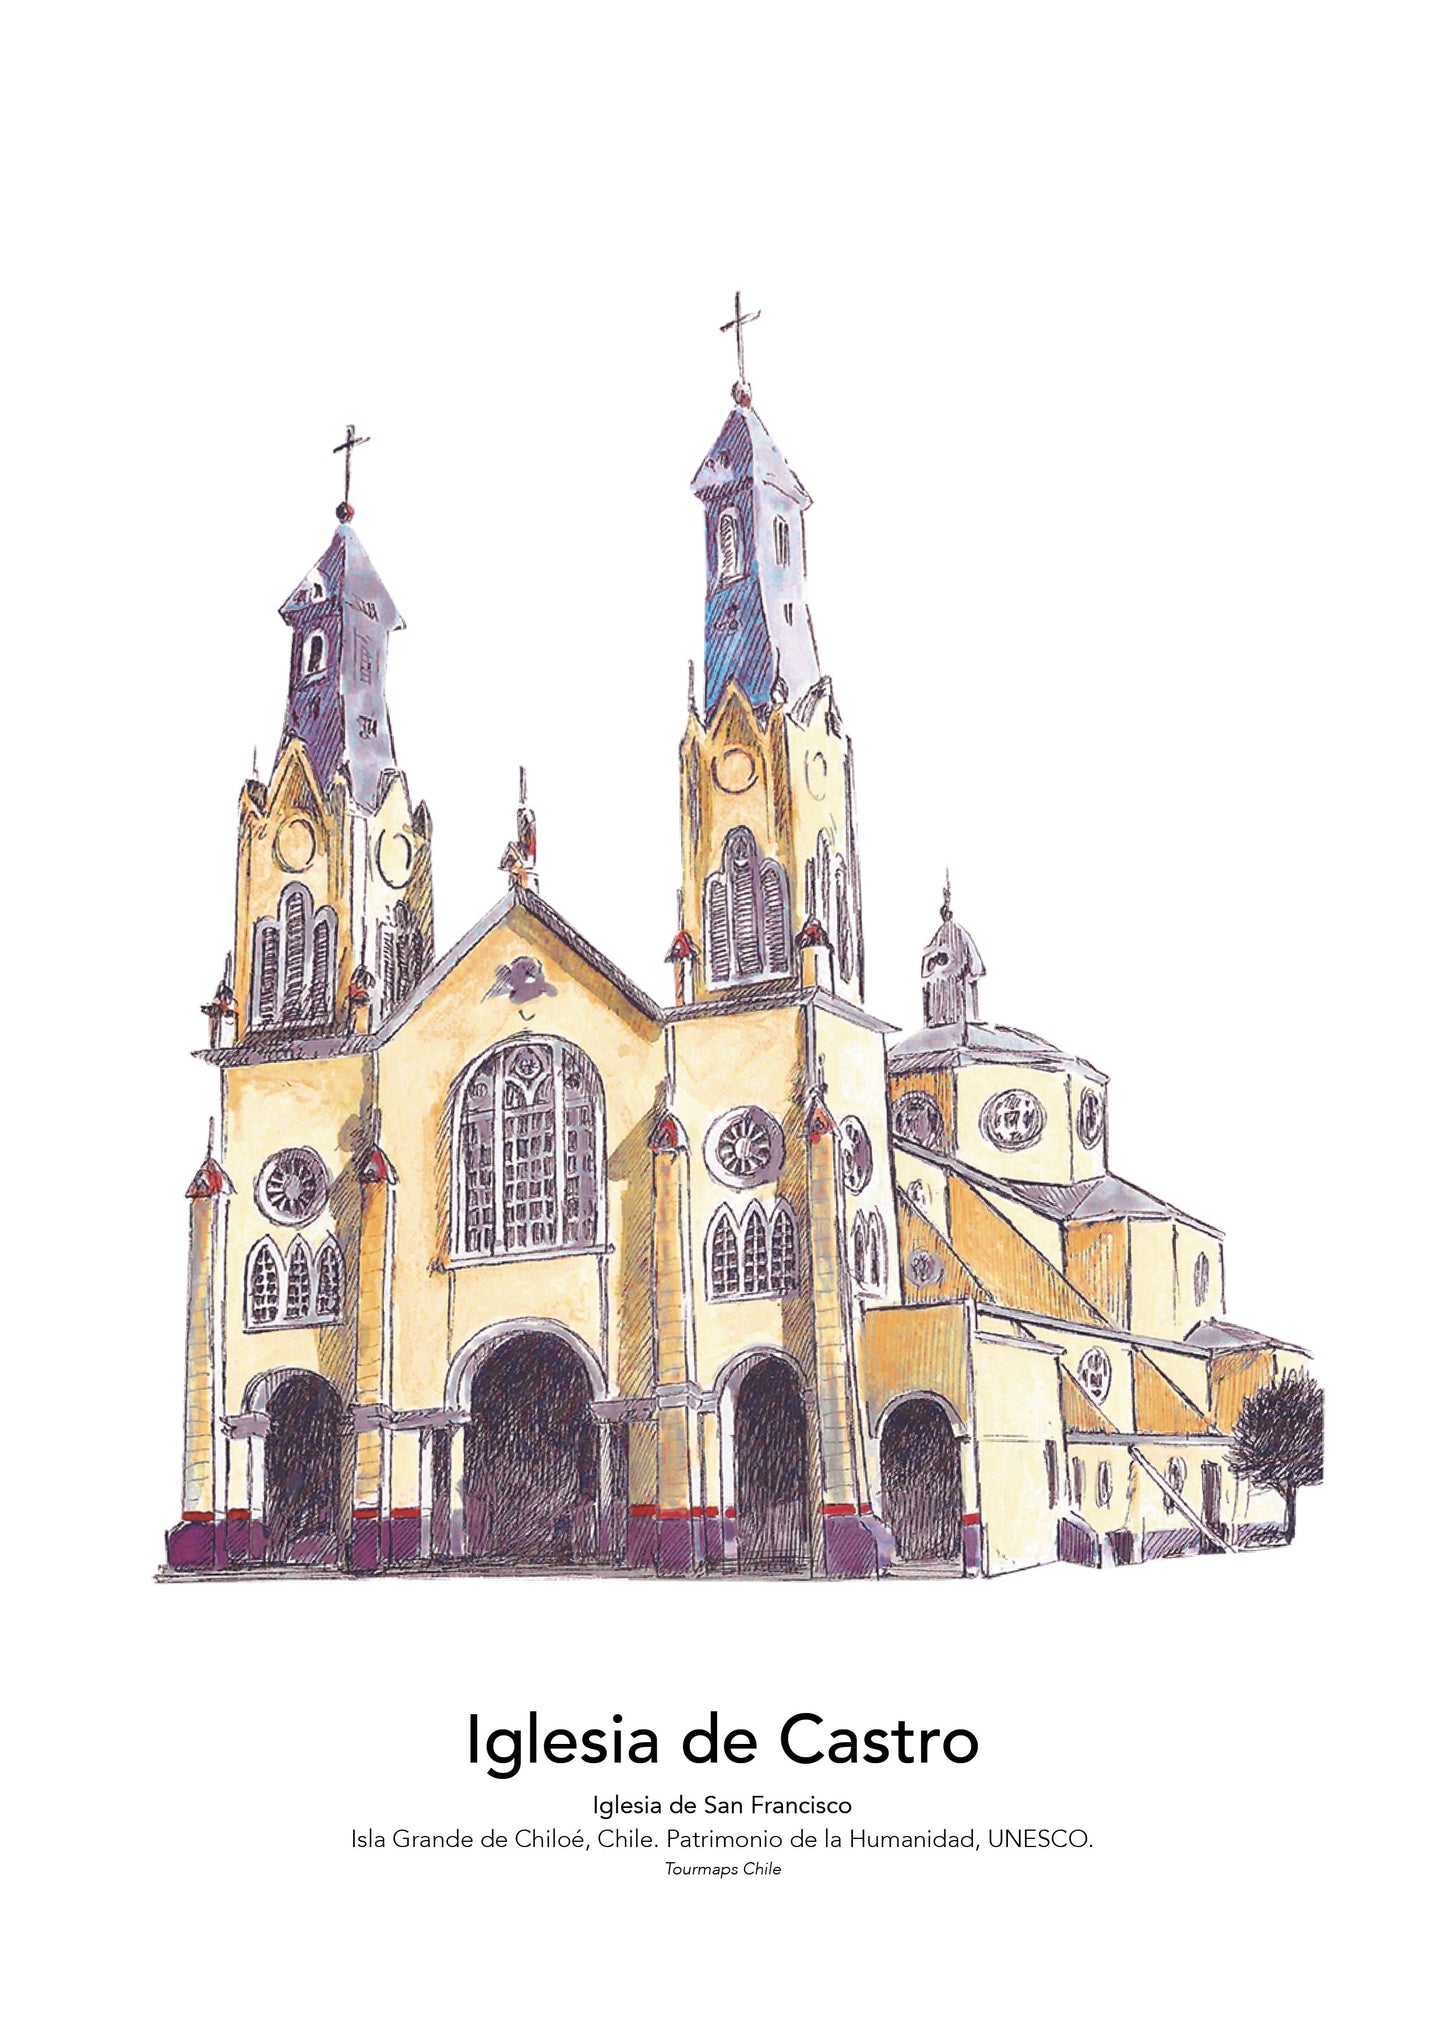 CHURCH OF CASTRO CHILOÉ - PLATE